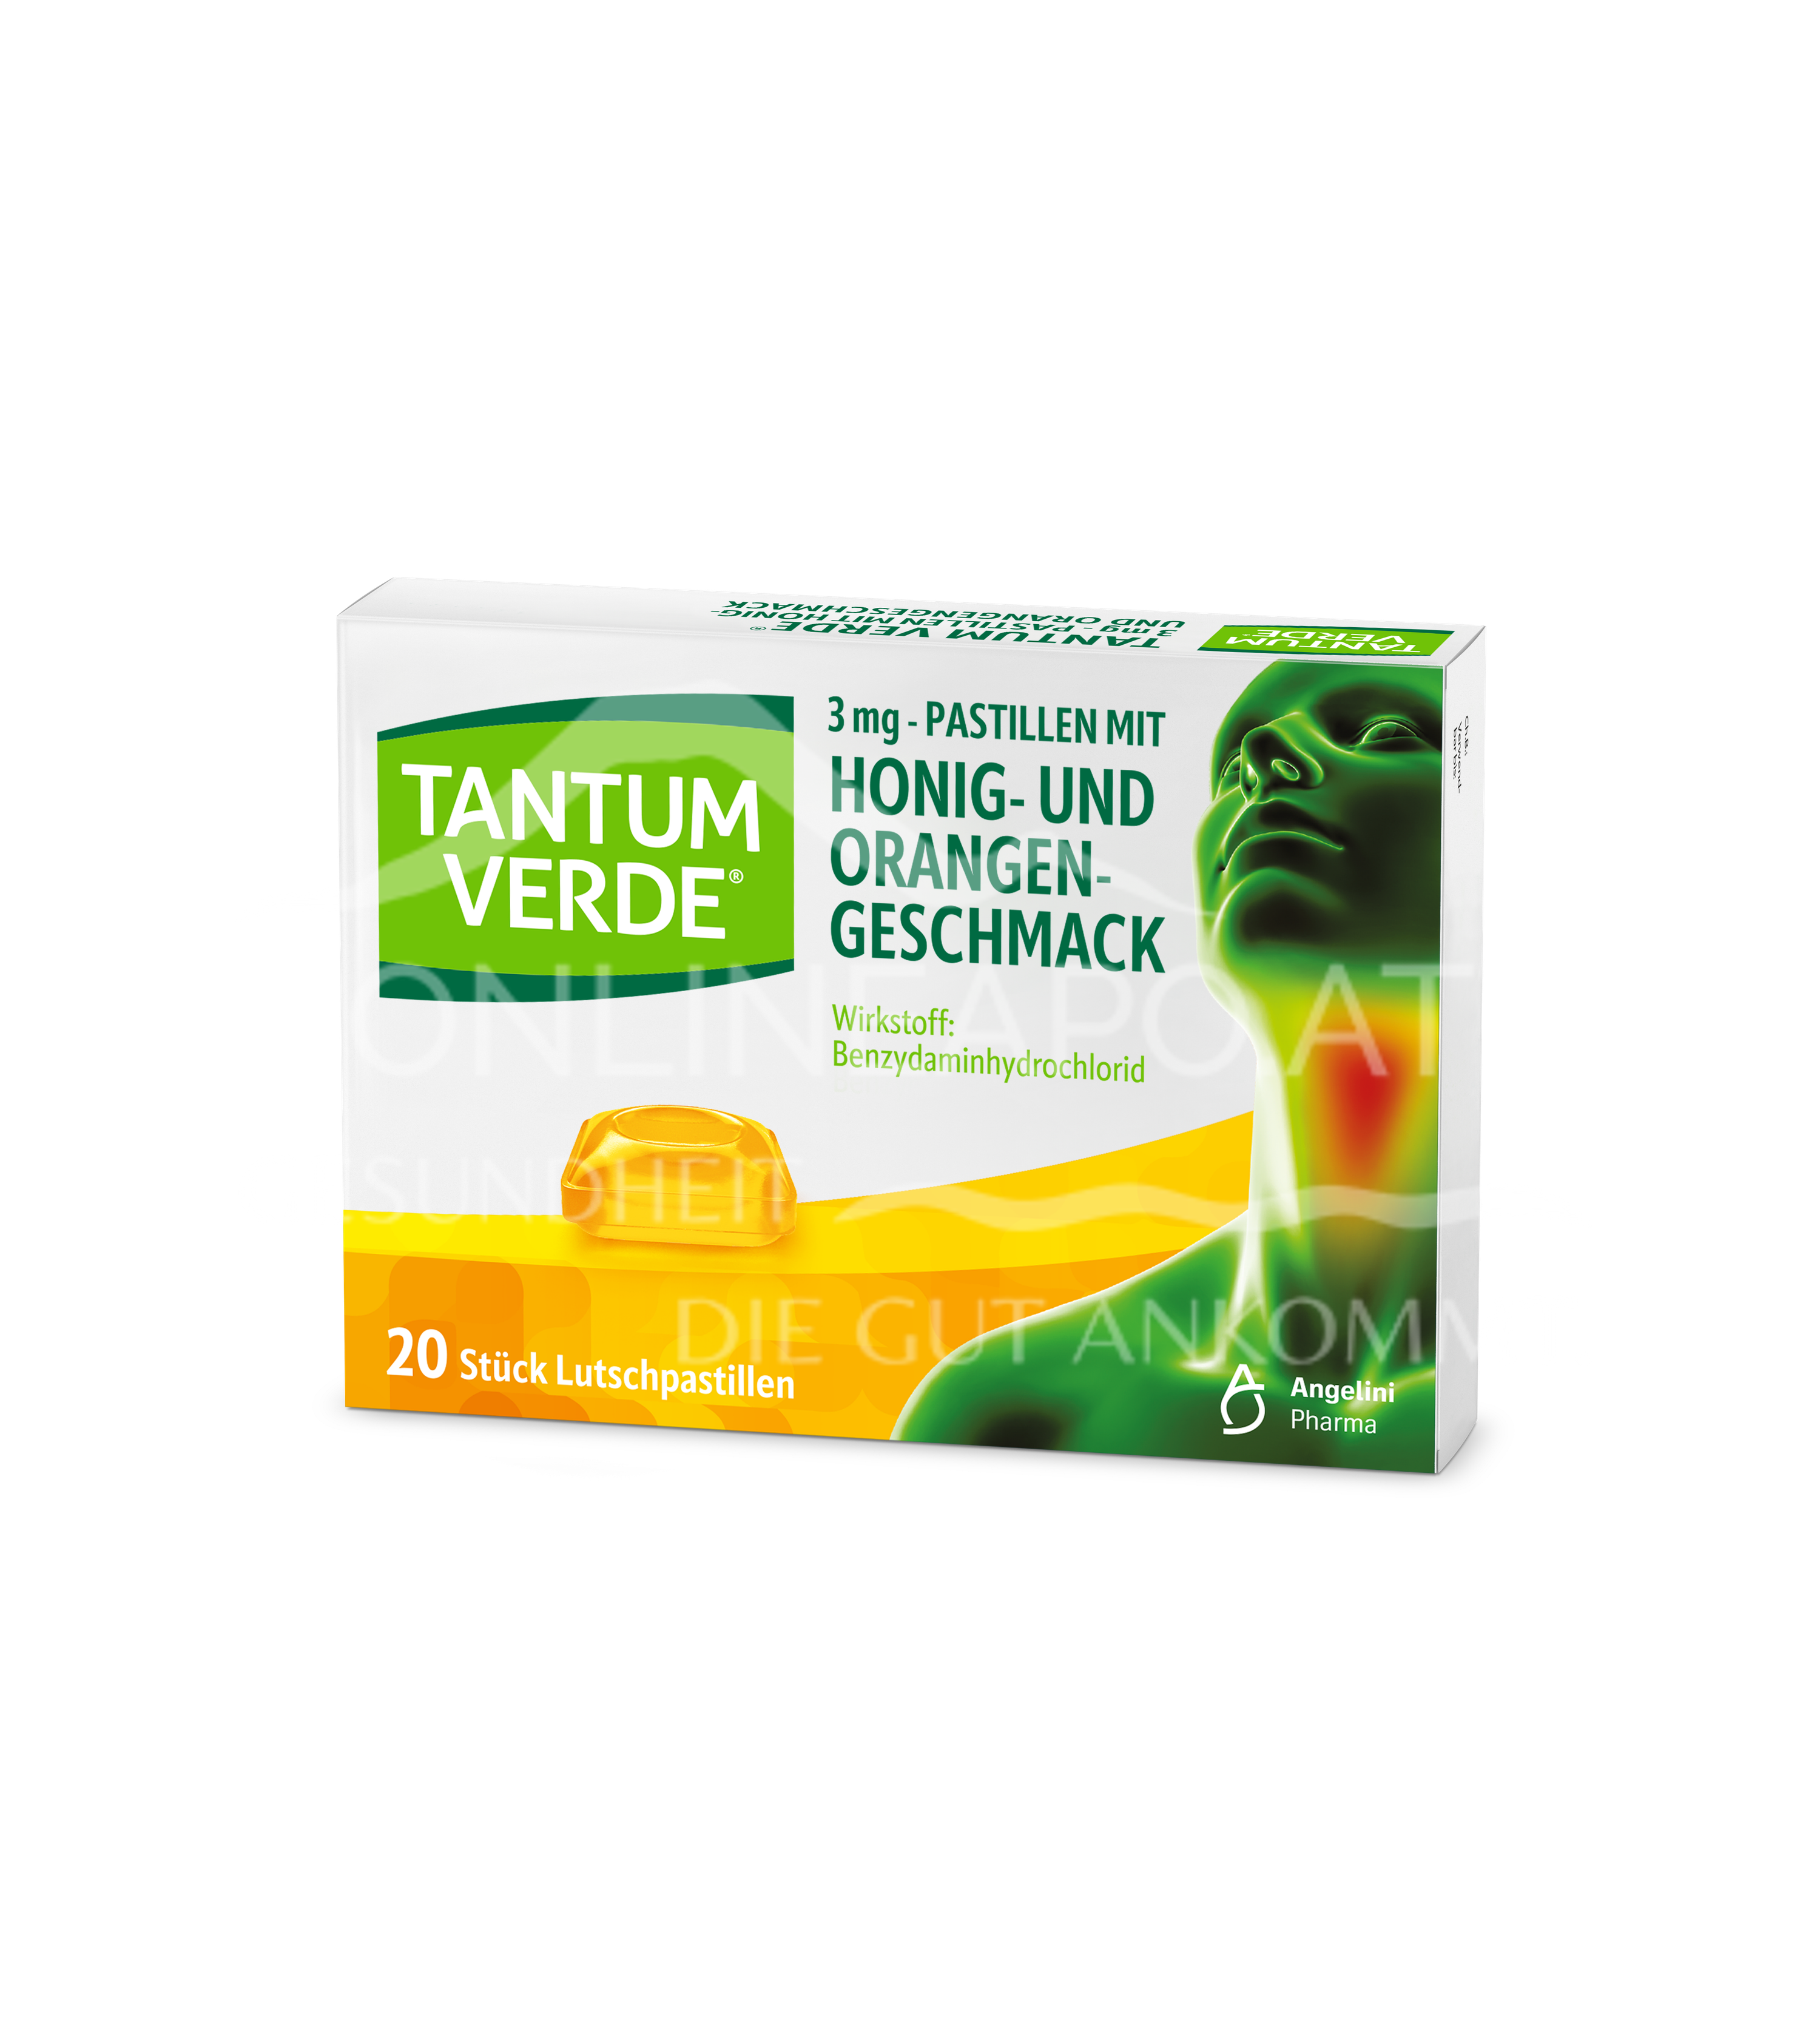 Tantum Verde® 3 mg – Pastillen mit Honig- und Orangengeschmack